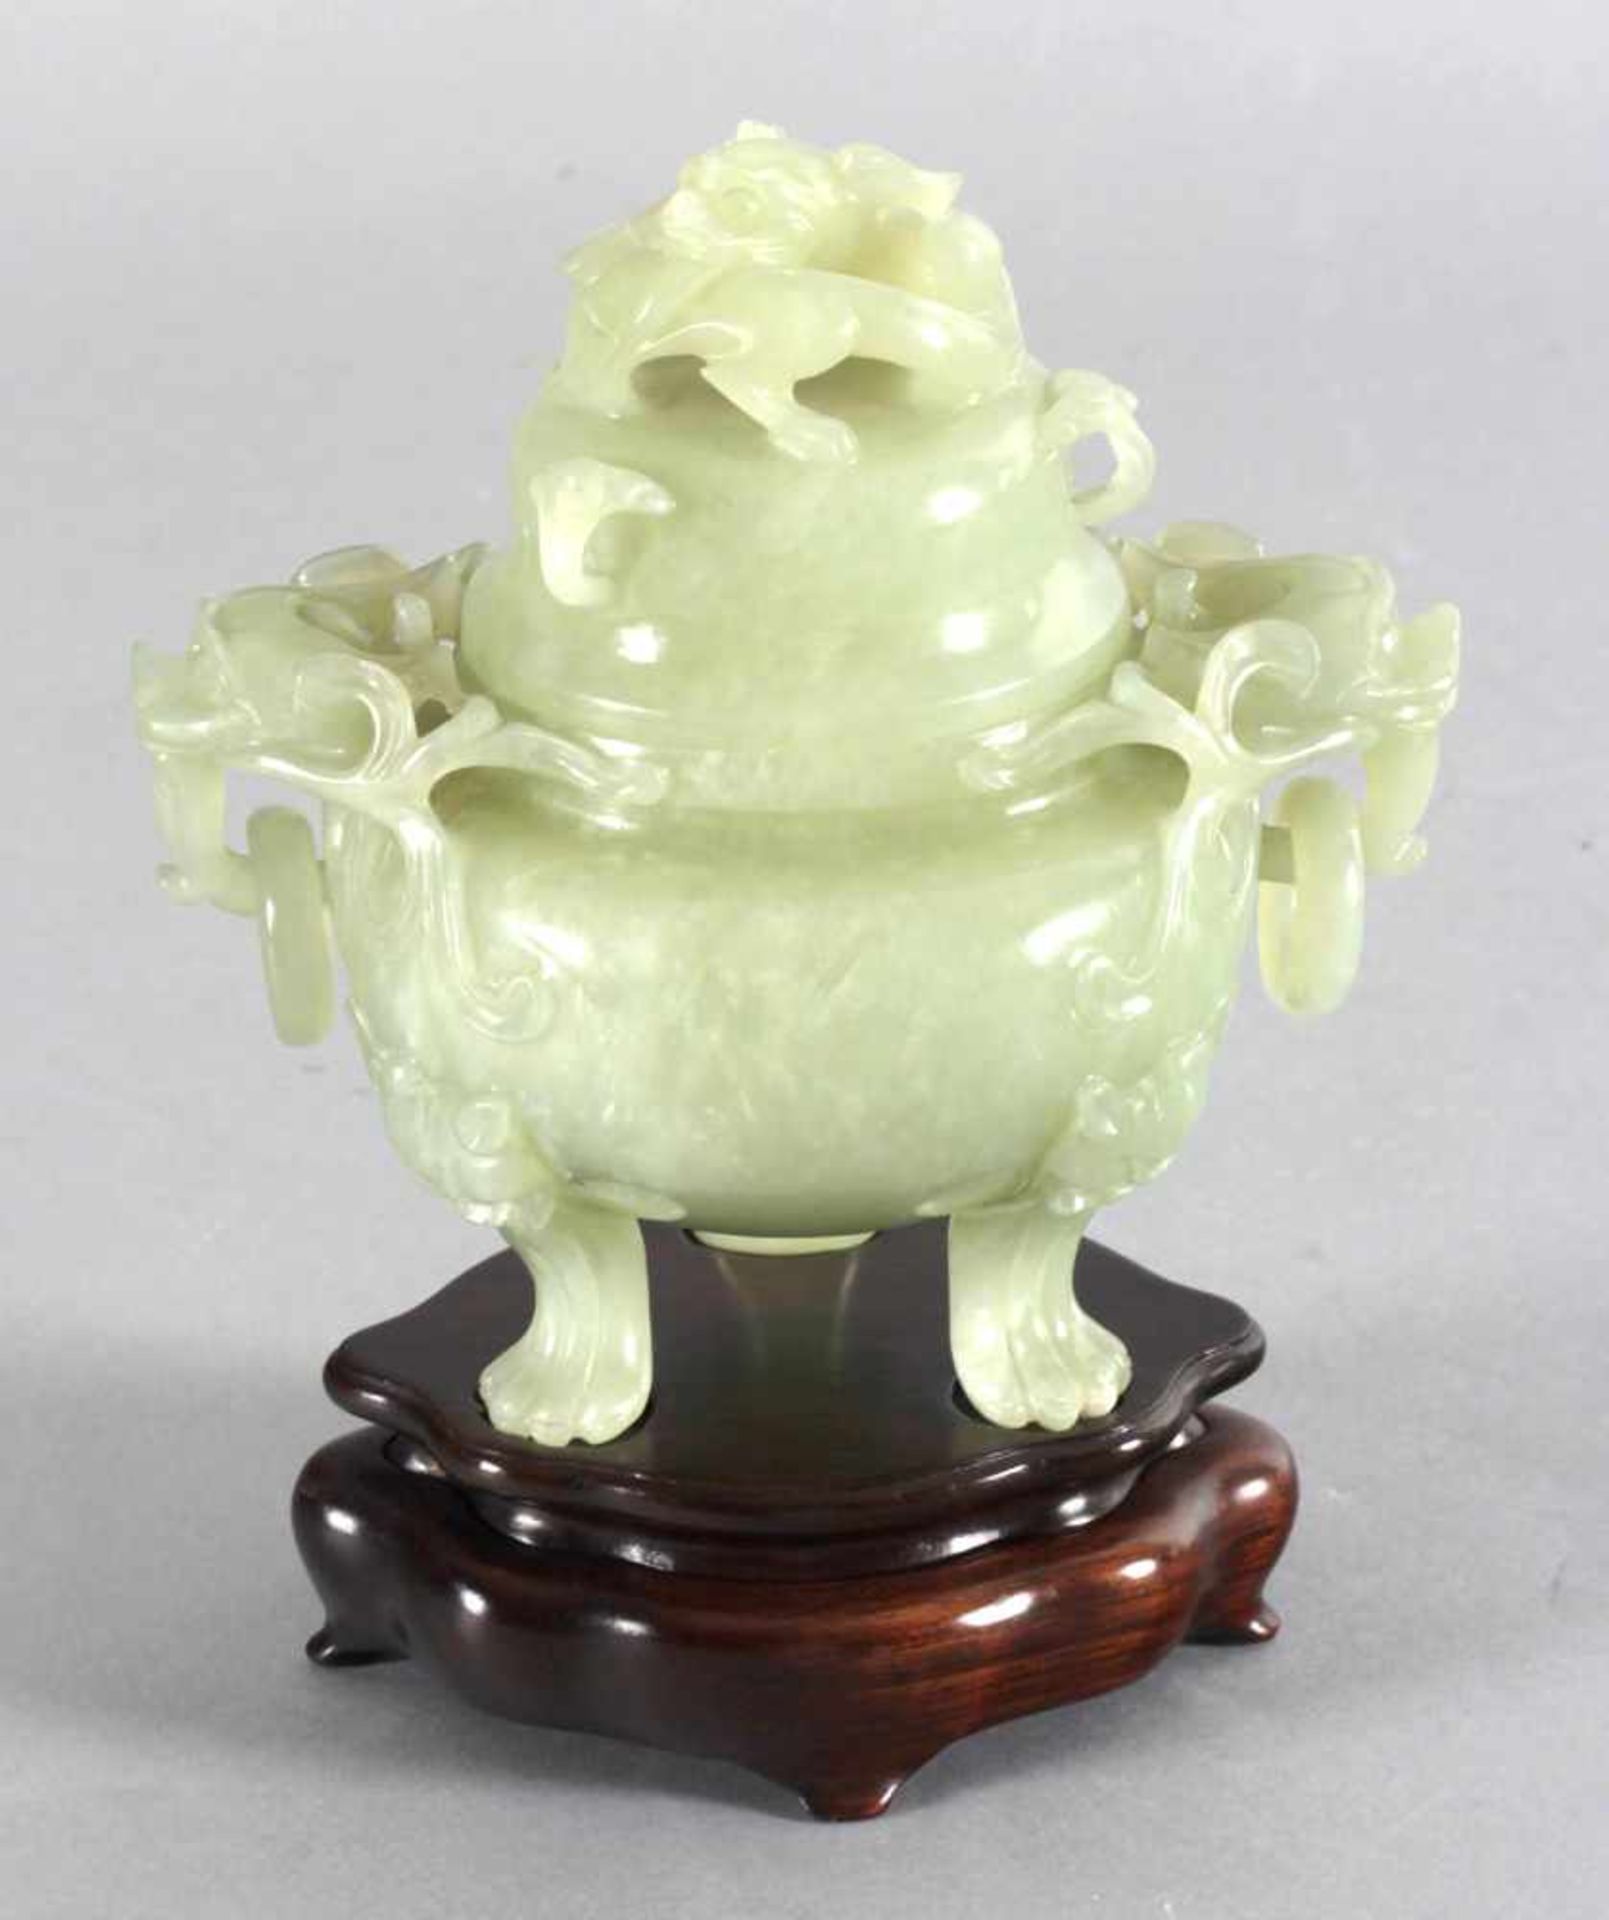 Ding aus hellgrüner Jade, China 20. Jh.dreibeiniges Gefäß mit zwei Handhaben mit Fo-Hundekopf und je